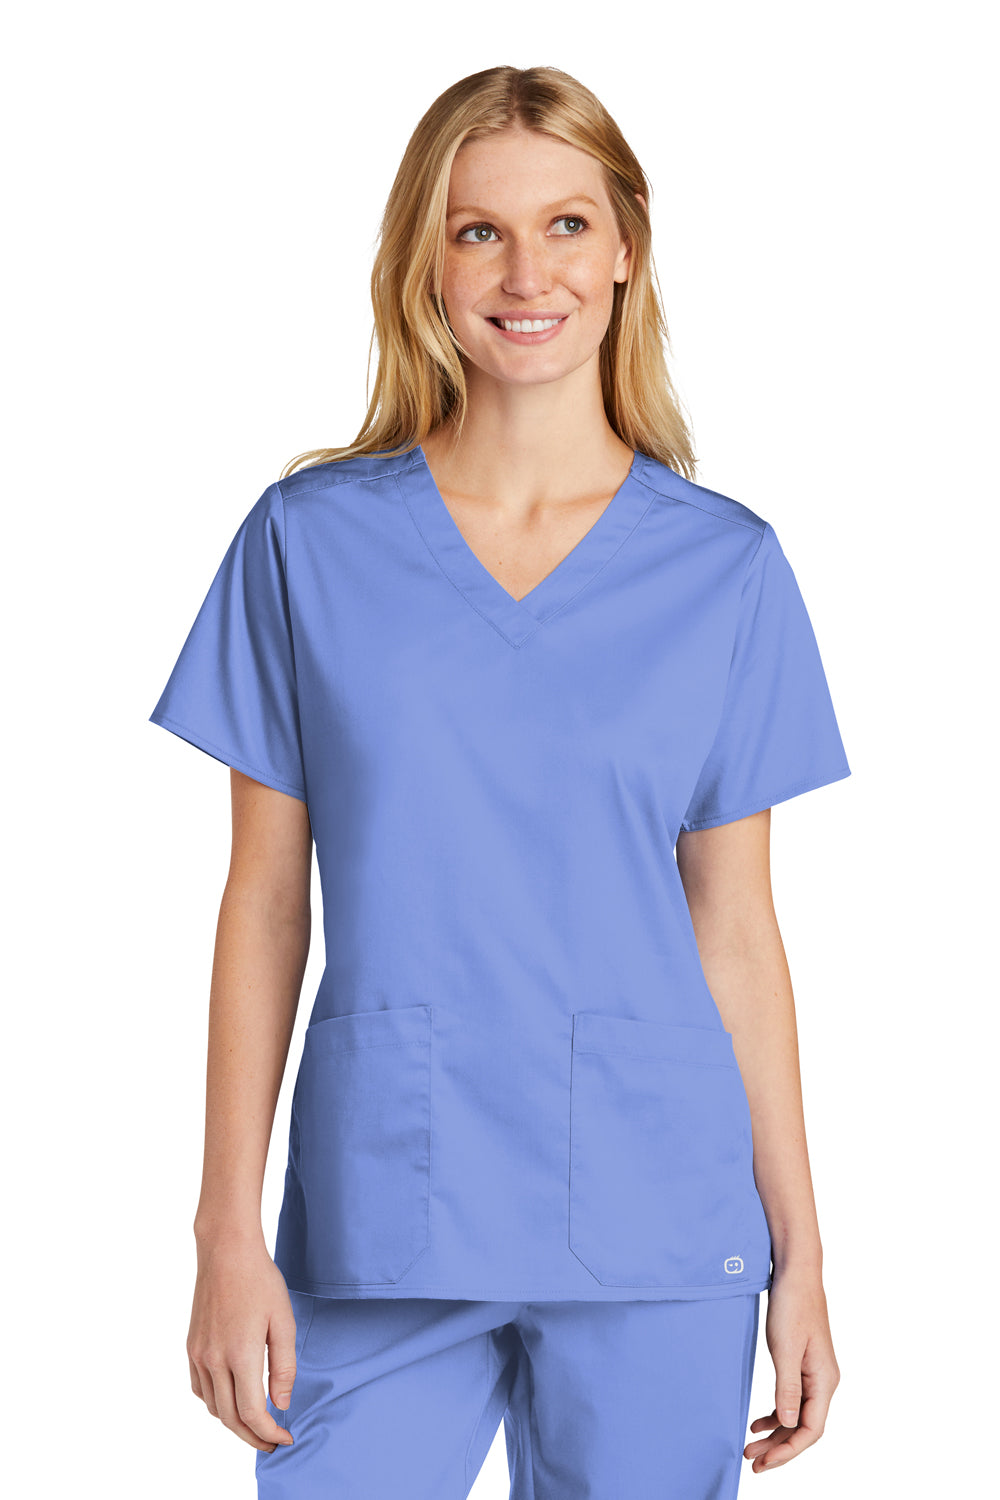 Wonderwink WW4560 WorkFlex Short Sleeve V-Neck Shirt Ceil Blue Front